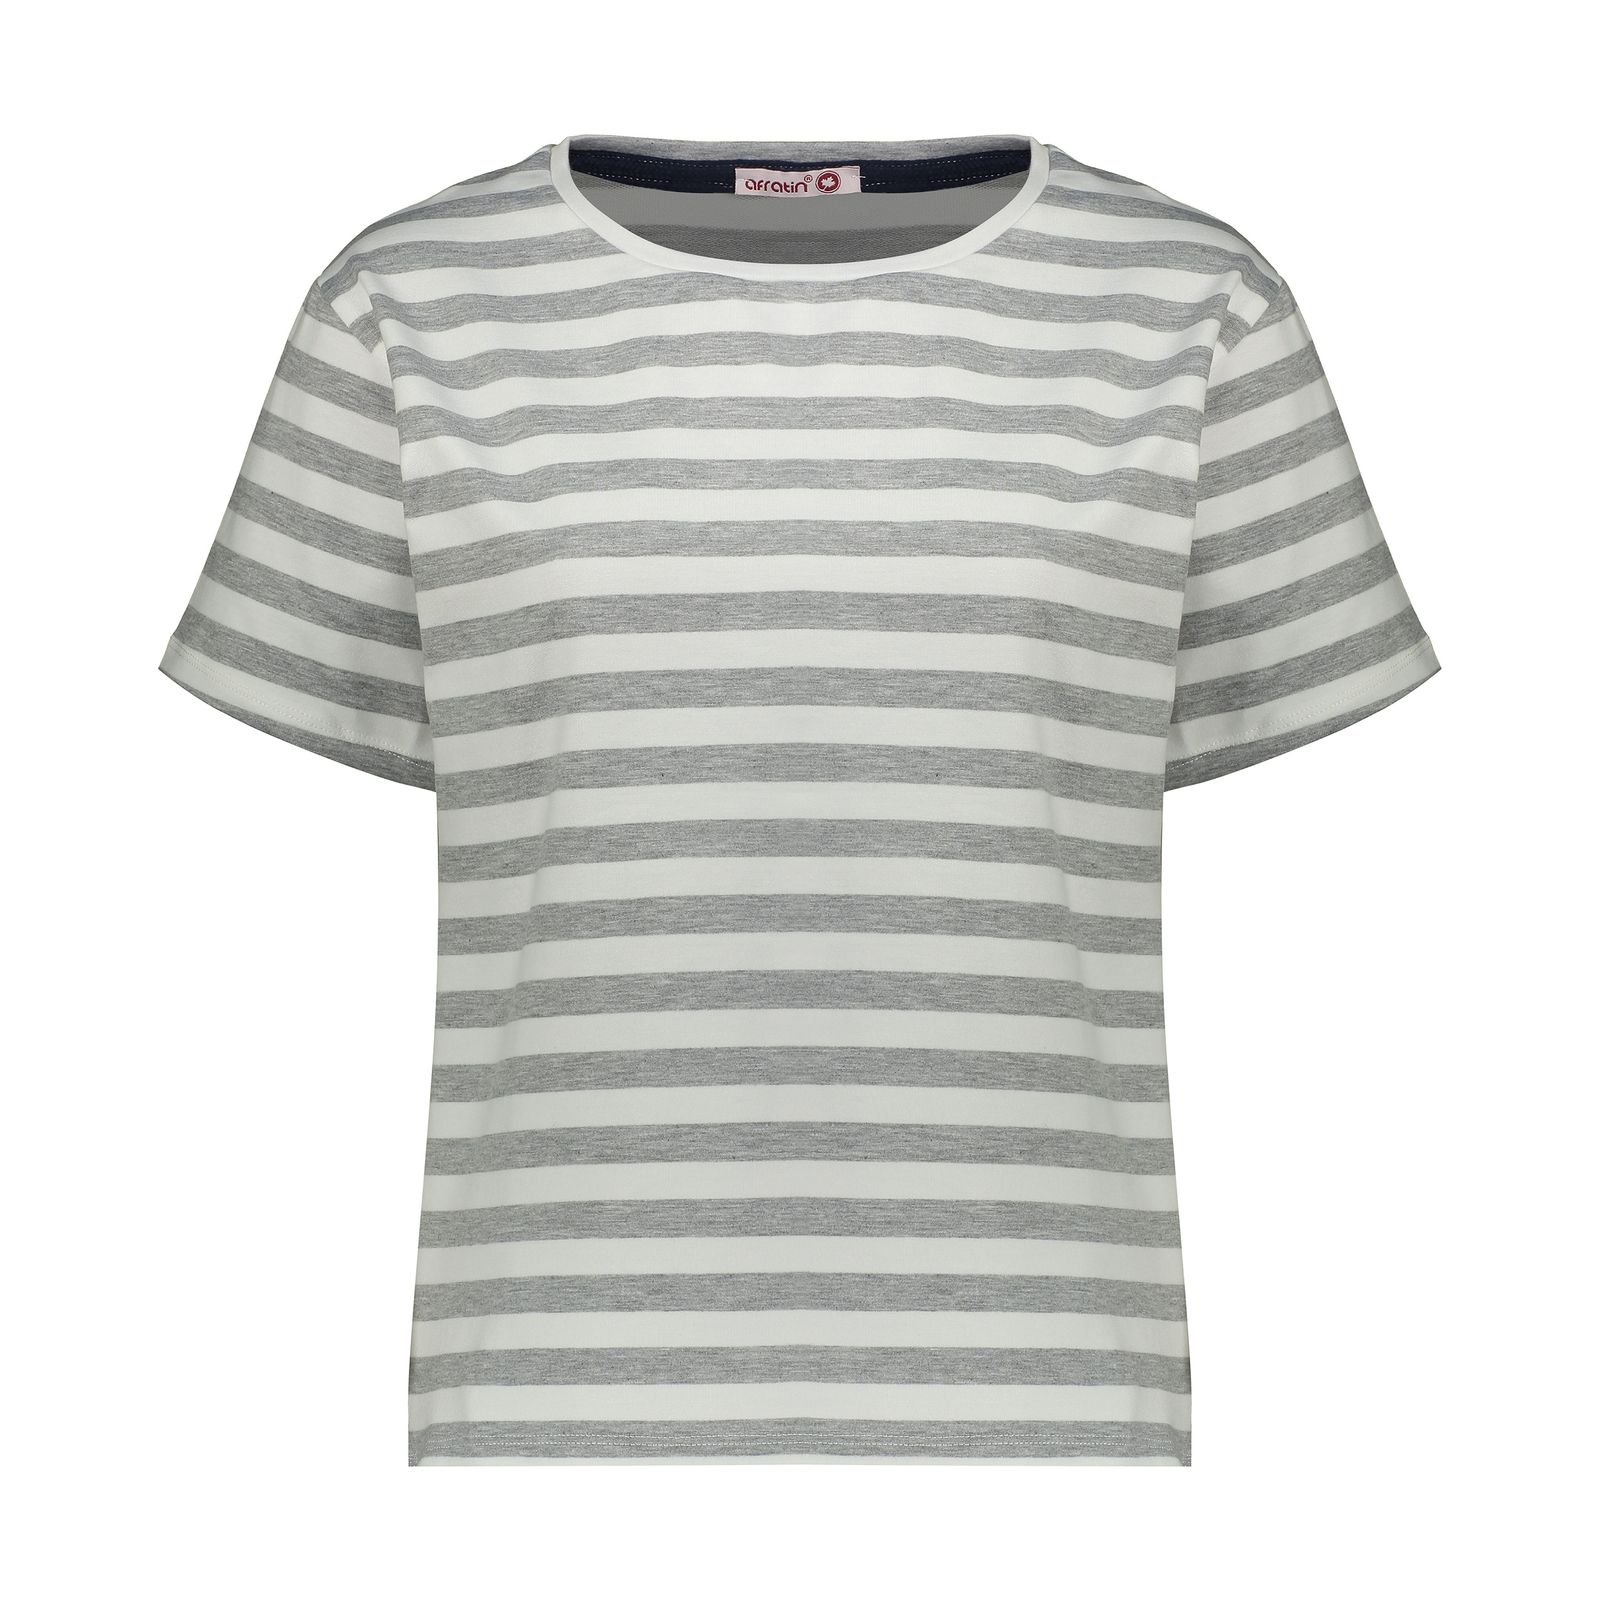 تی شرت آستین کوتاه زنانه افراتین مدل پاریس کد 2585 رنگ طوسی  -  - 1